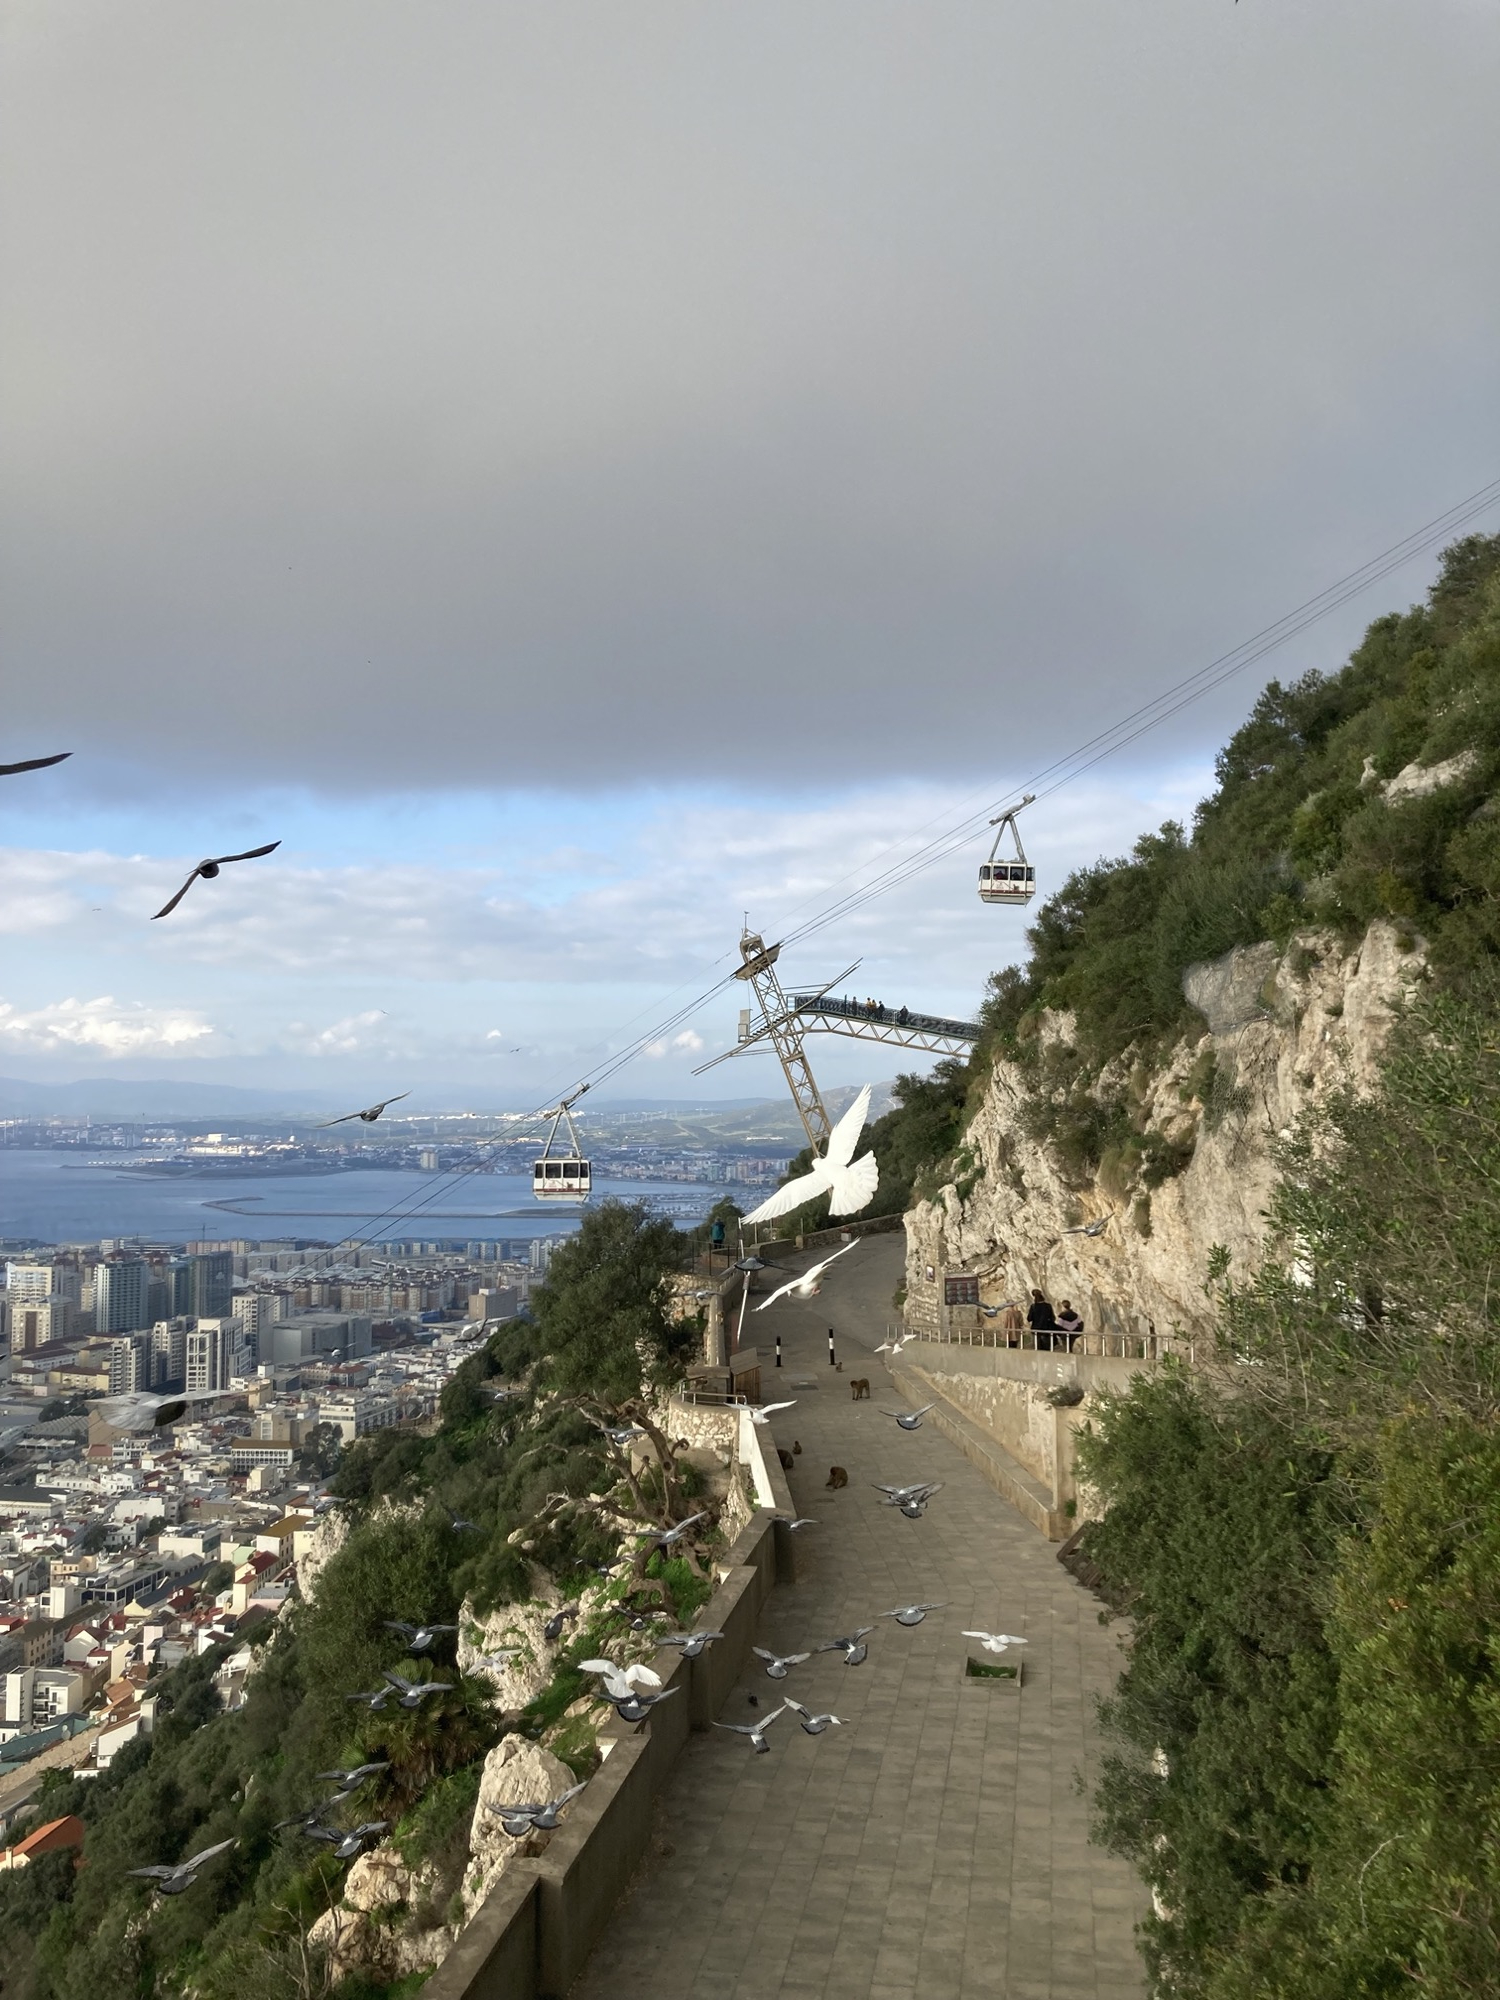 Vogelschwarm über einer Straße am Felsen von Gibraltar, in der Mitte vor der im Hintergrund liegenden Mittelstation der Seilbahn hebt sich eine weiße Möwe mit ausgebreiteten Flügeln und fächerartig gespreiztem Schwanz deutlich von den anderen grauen Flügeln des Schwarms ab